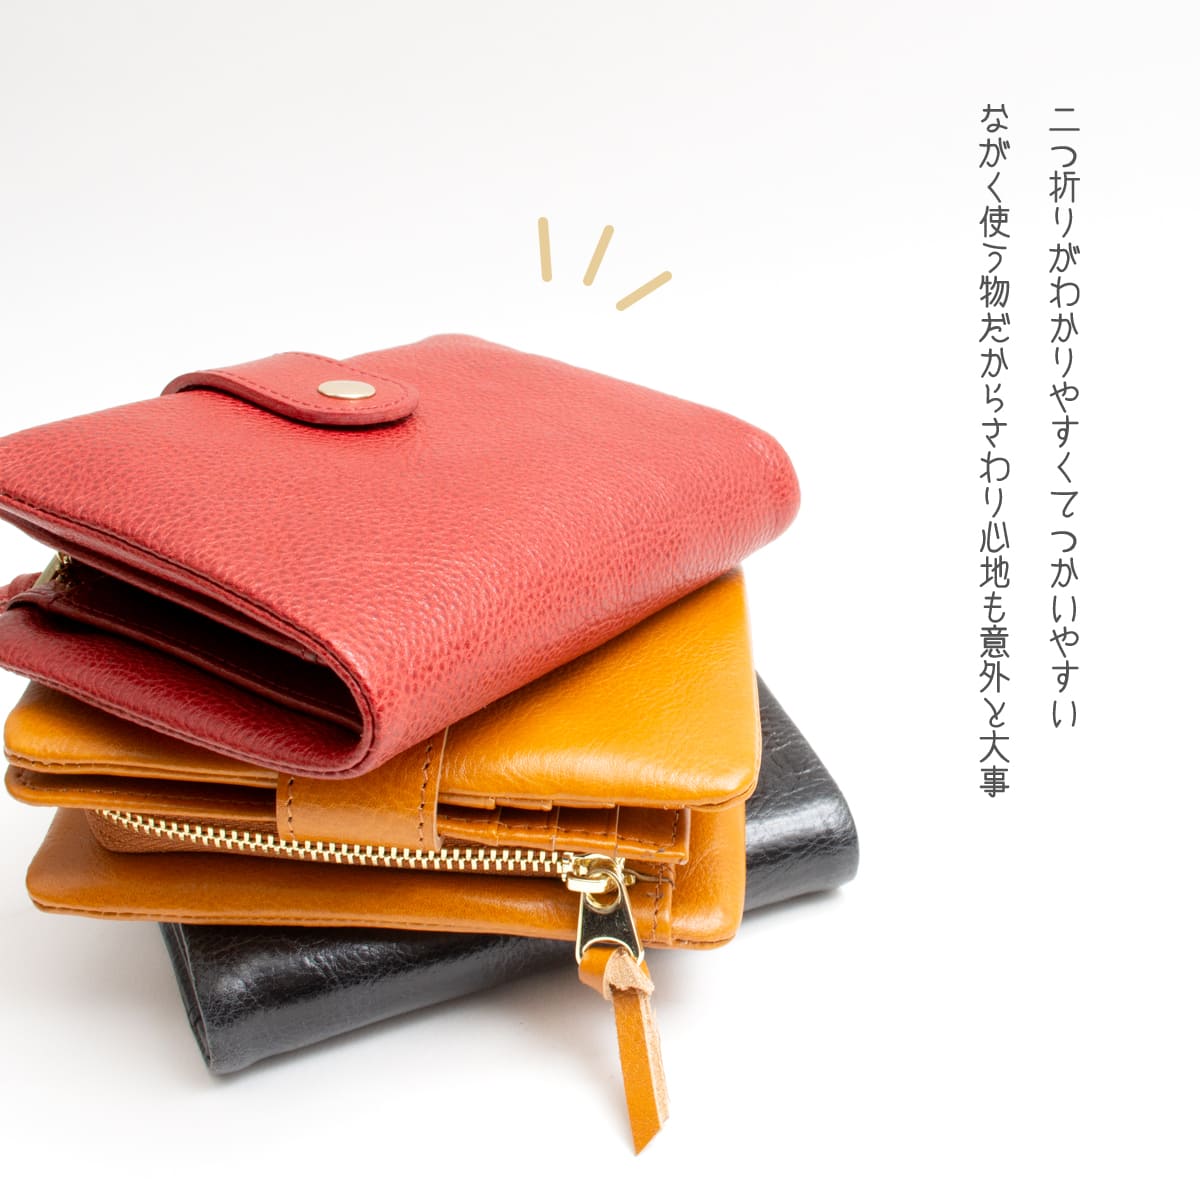 二つ折り財布 革 財布 ブランド ミニ財布 レディース 小さい財布 本革 柔らか イタリアンレザー コンパクト さいふ サイフ シンプル かわいい  おしゃれ :waa7101:All Right Leather 通販 